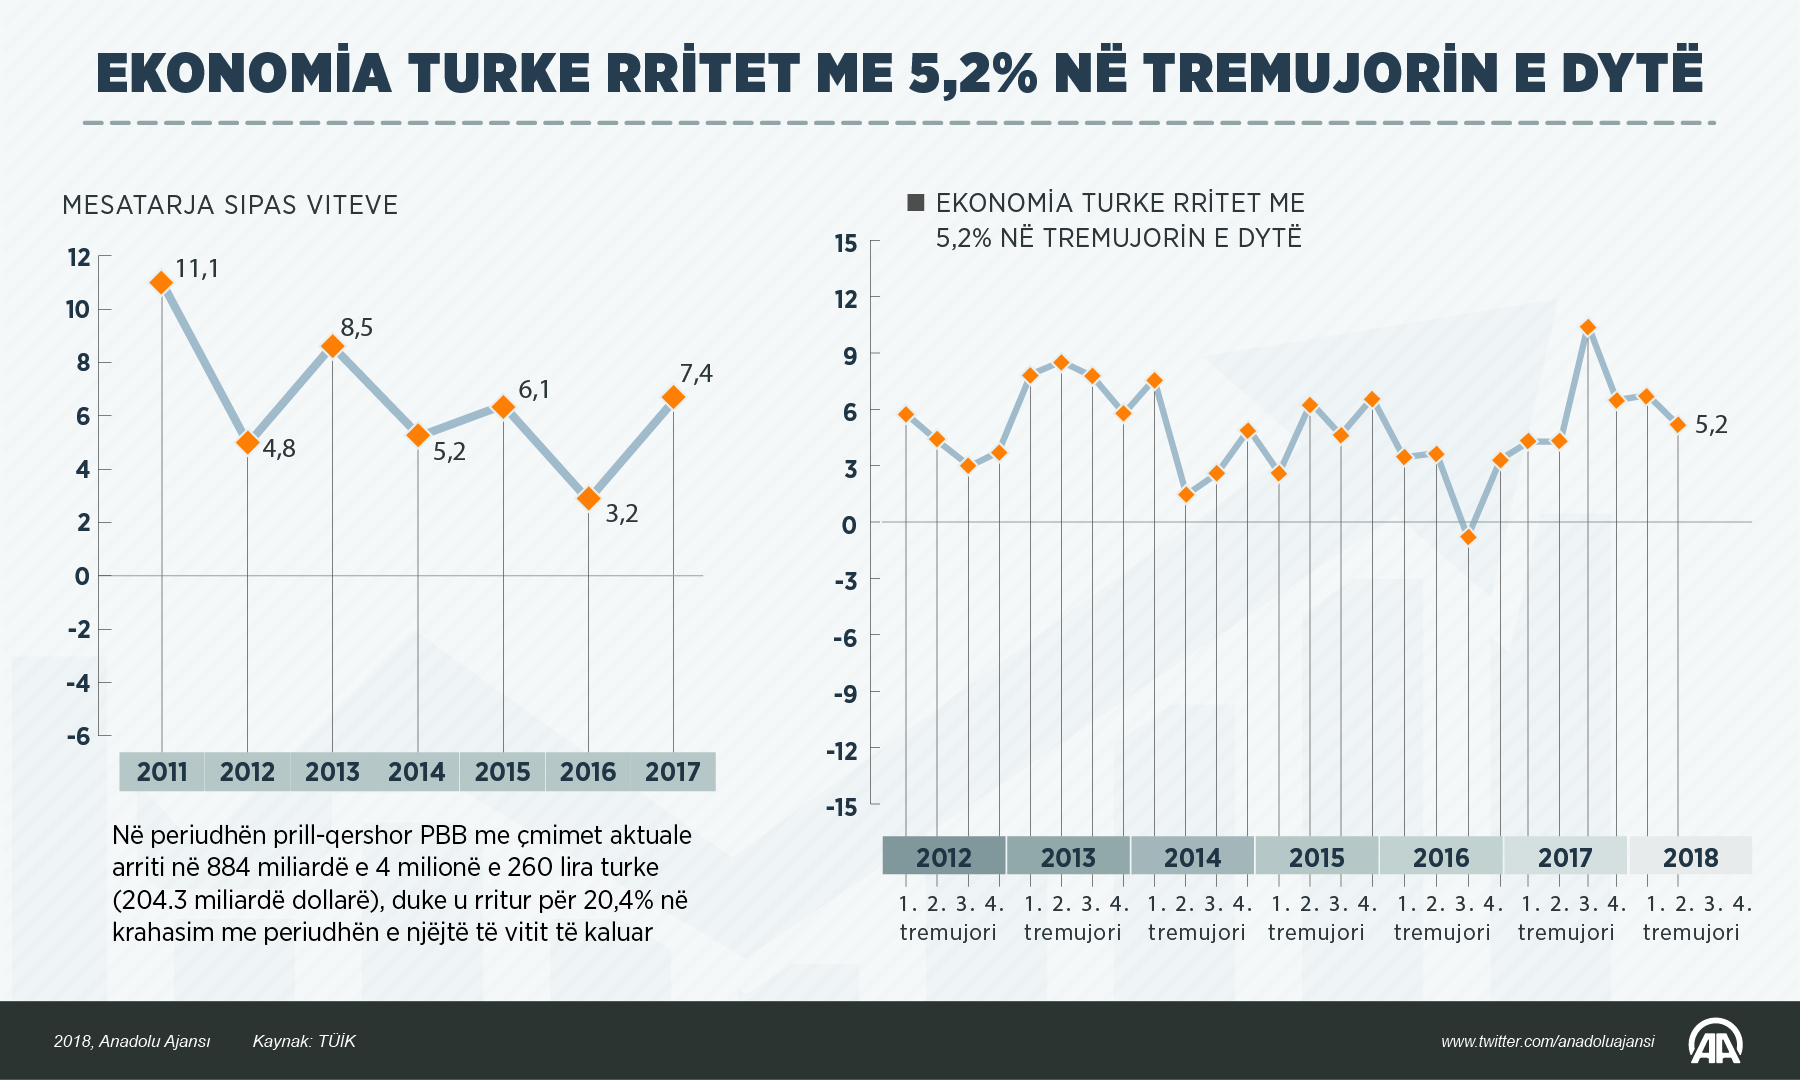 Ekonomia e Turqisë rritet me 5,2 për qind në tremujorin e dytë